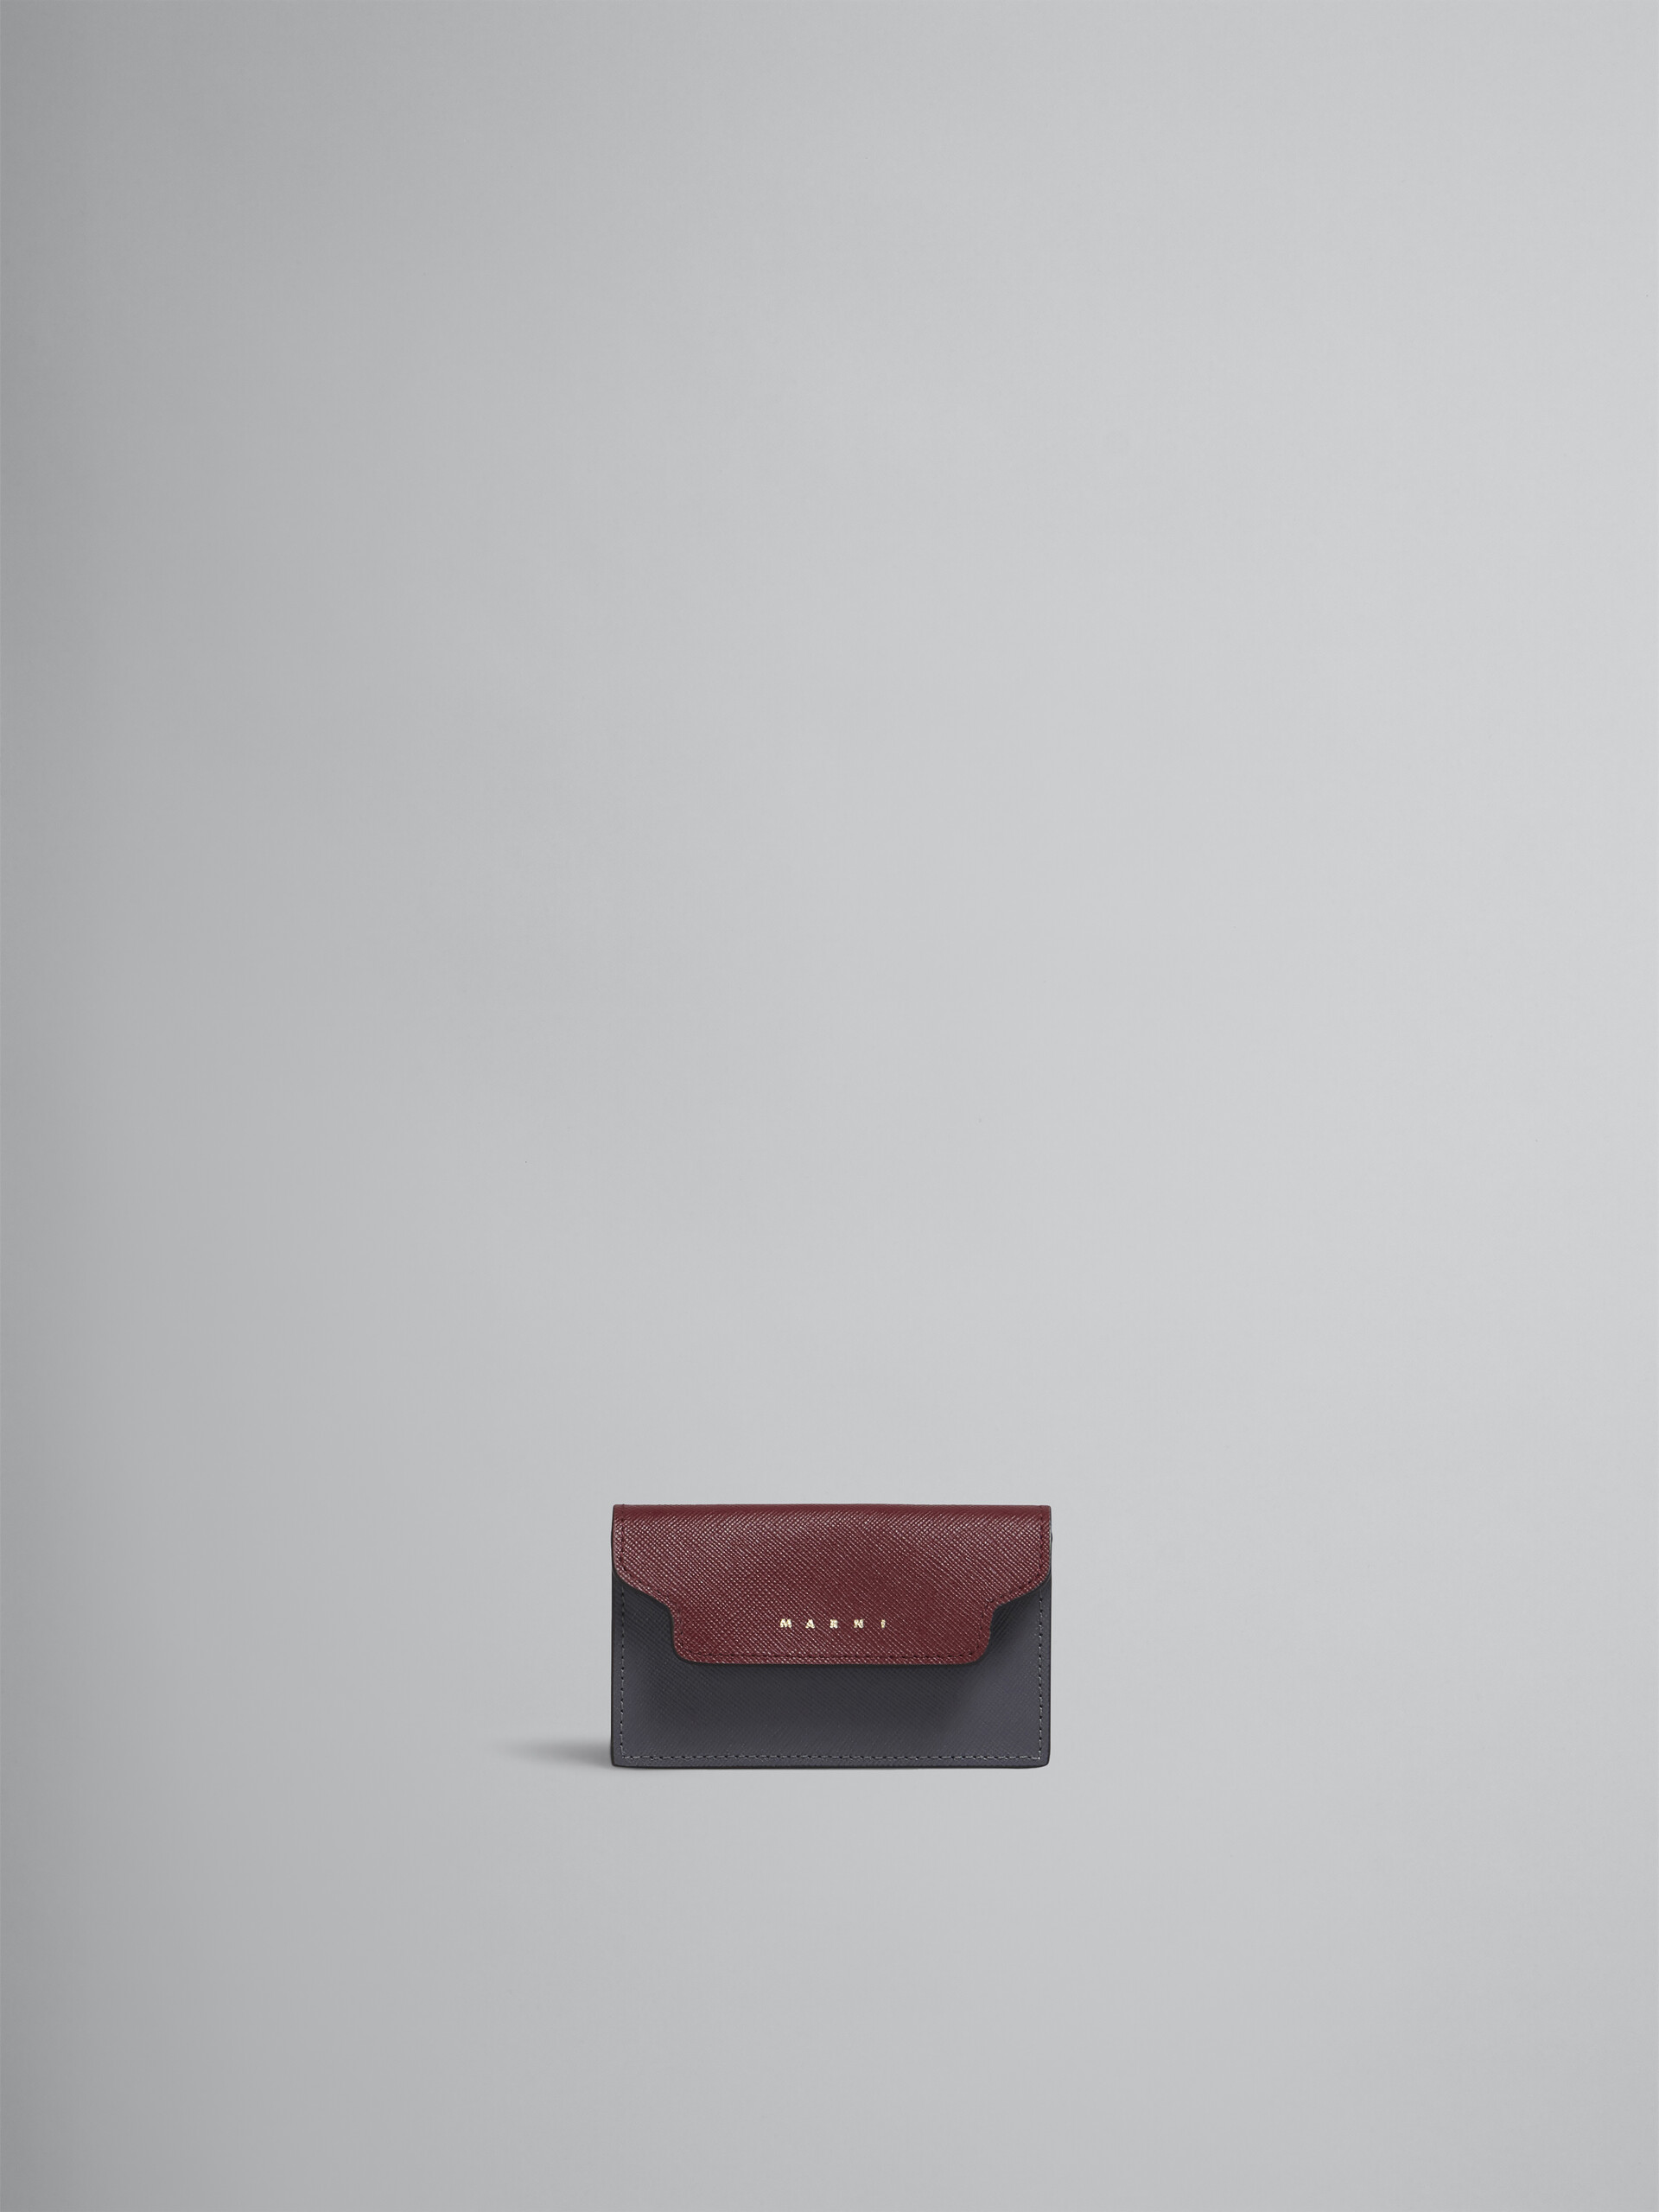 Porte-cartes en cuir saffiano rouge, rose et gris - Portefeuilles - Image 1